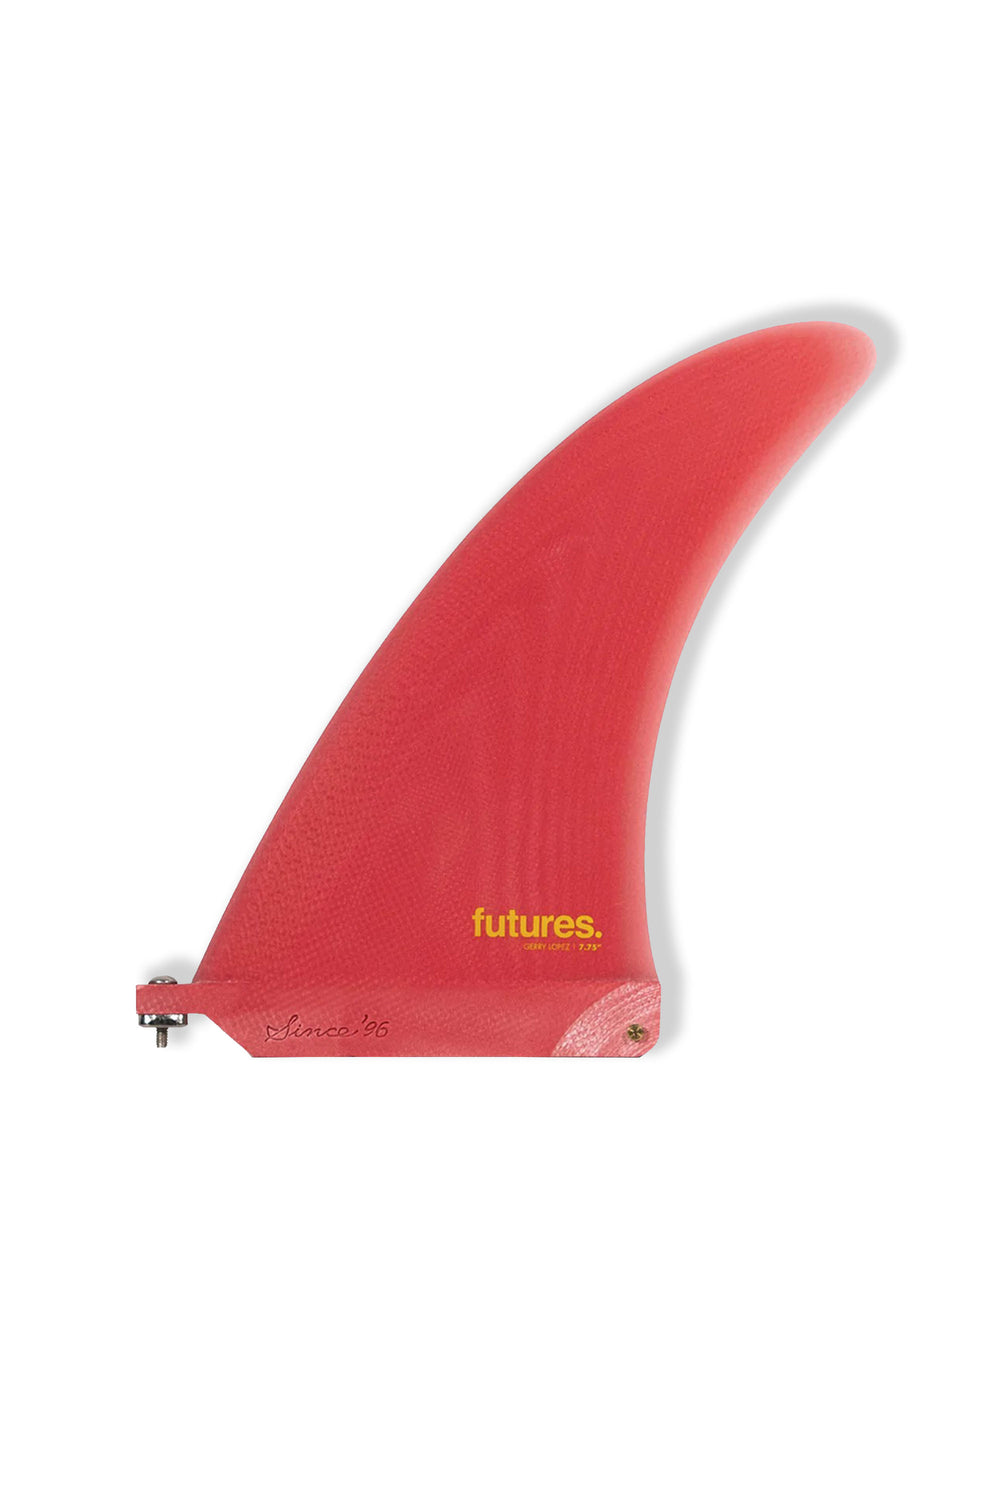 Pukas-Surf-Shop-Futures-Fins-Gerry-Lopez-7-75-red